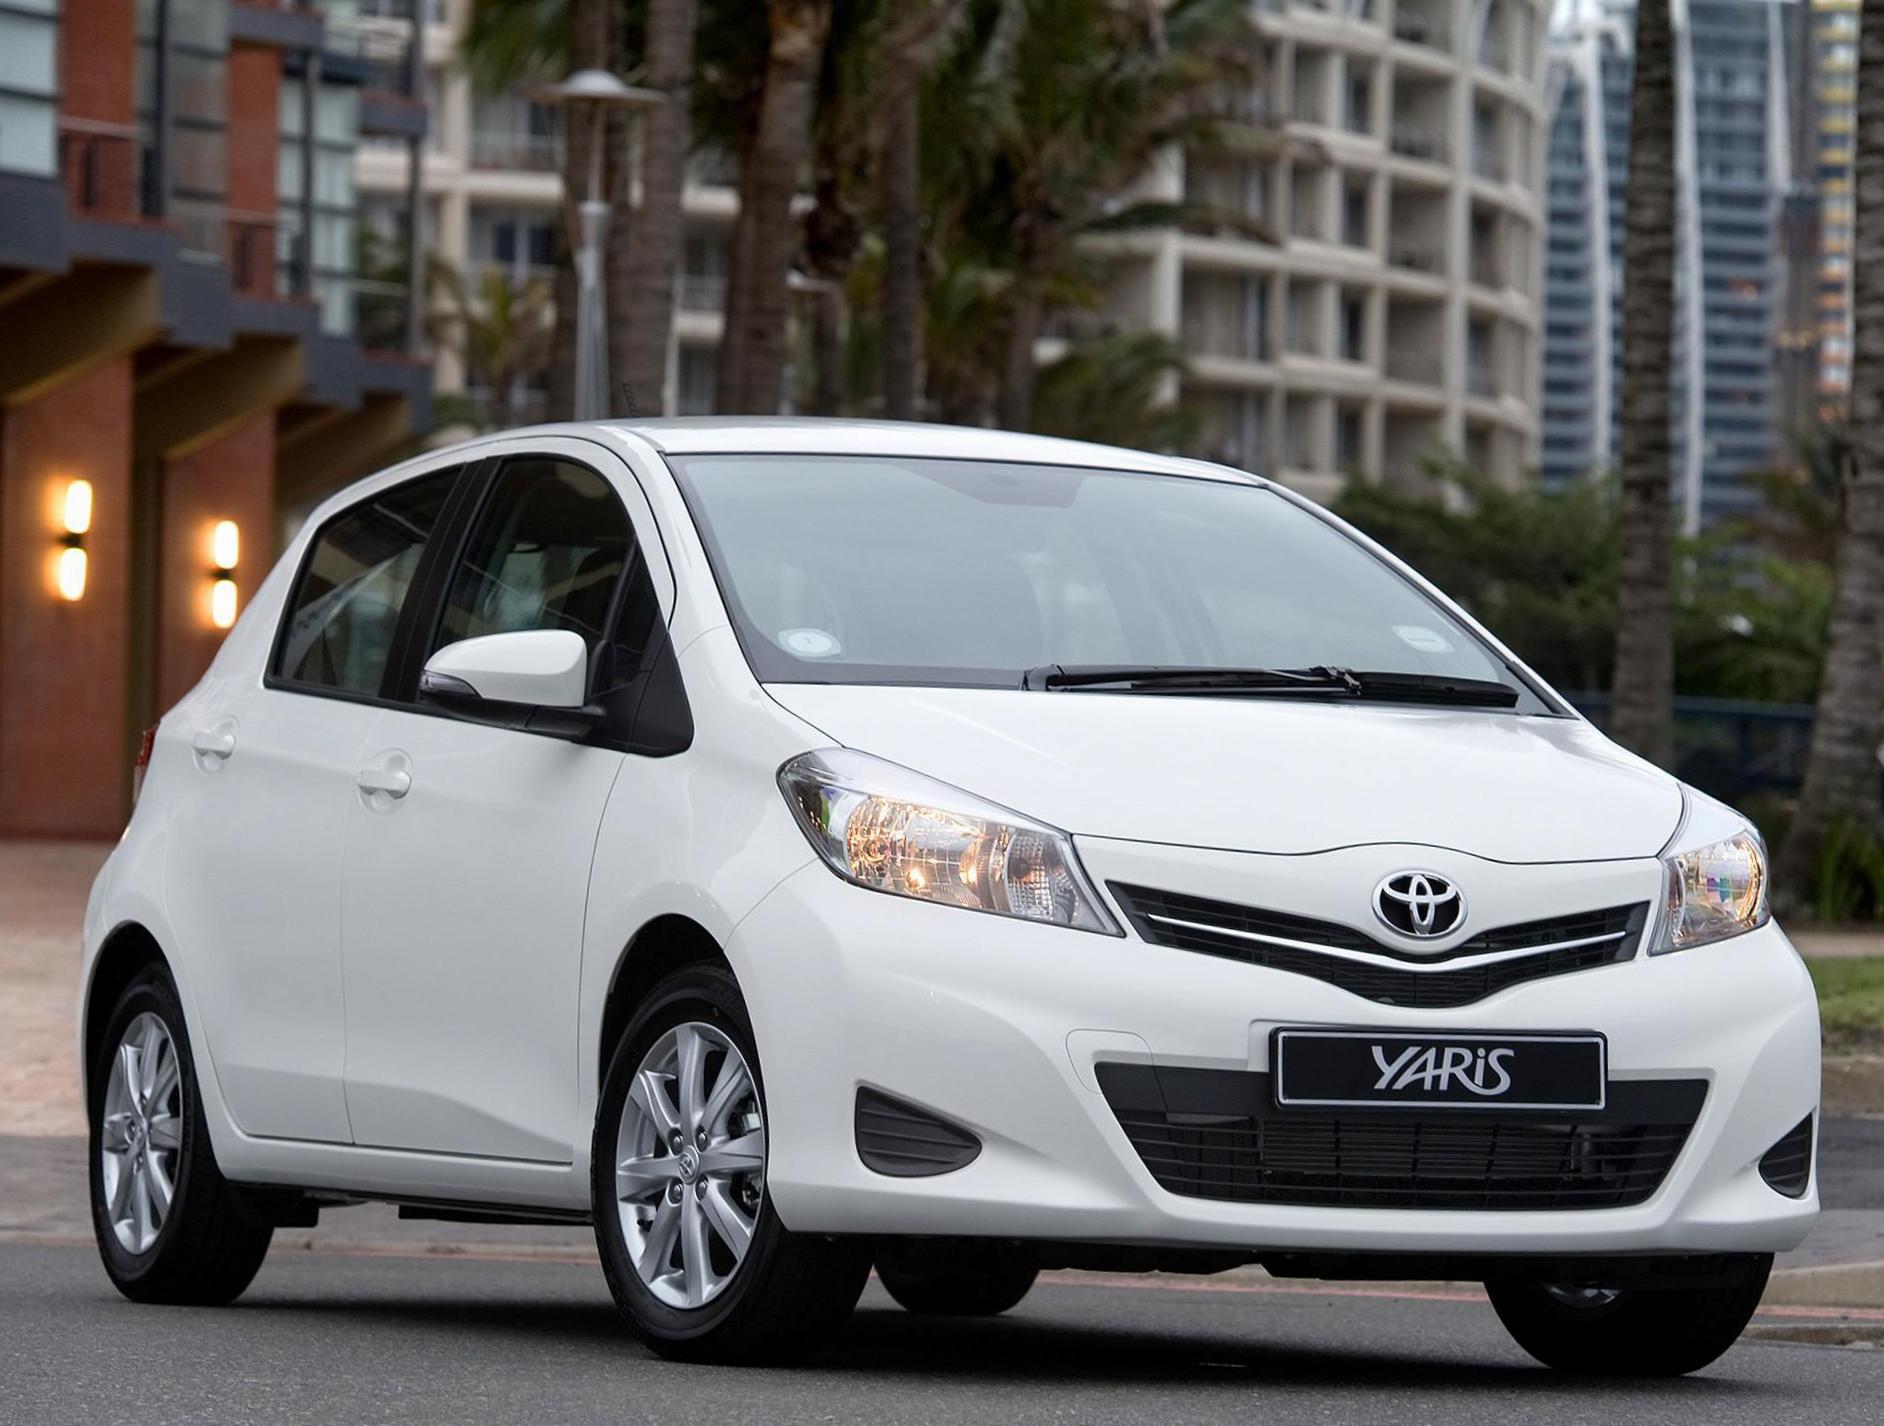 Yaris 5 doors Toyota cost 2015